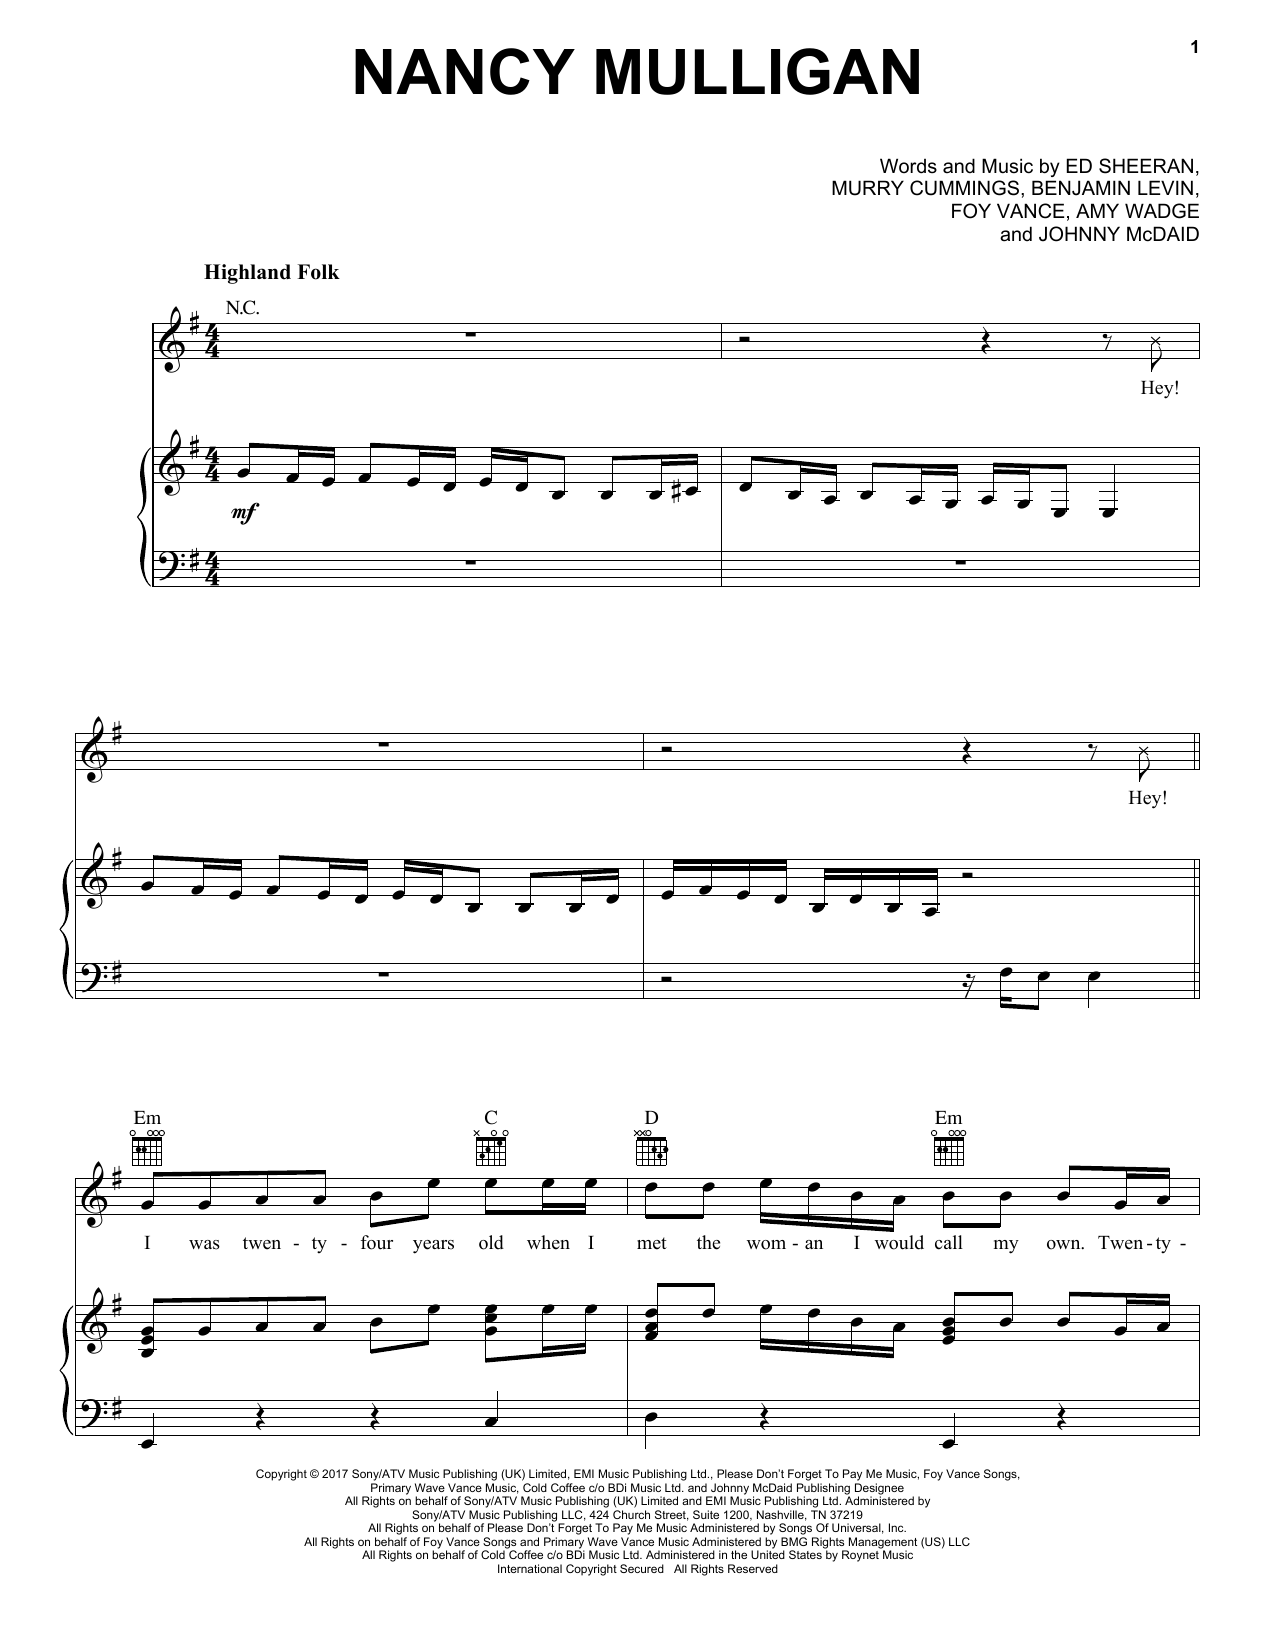 Ed Sheeran Nancy Mulligan Sheet Music Notes & Chords for Lyrics & Chords - Download or Print PDF